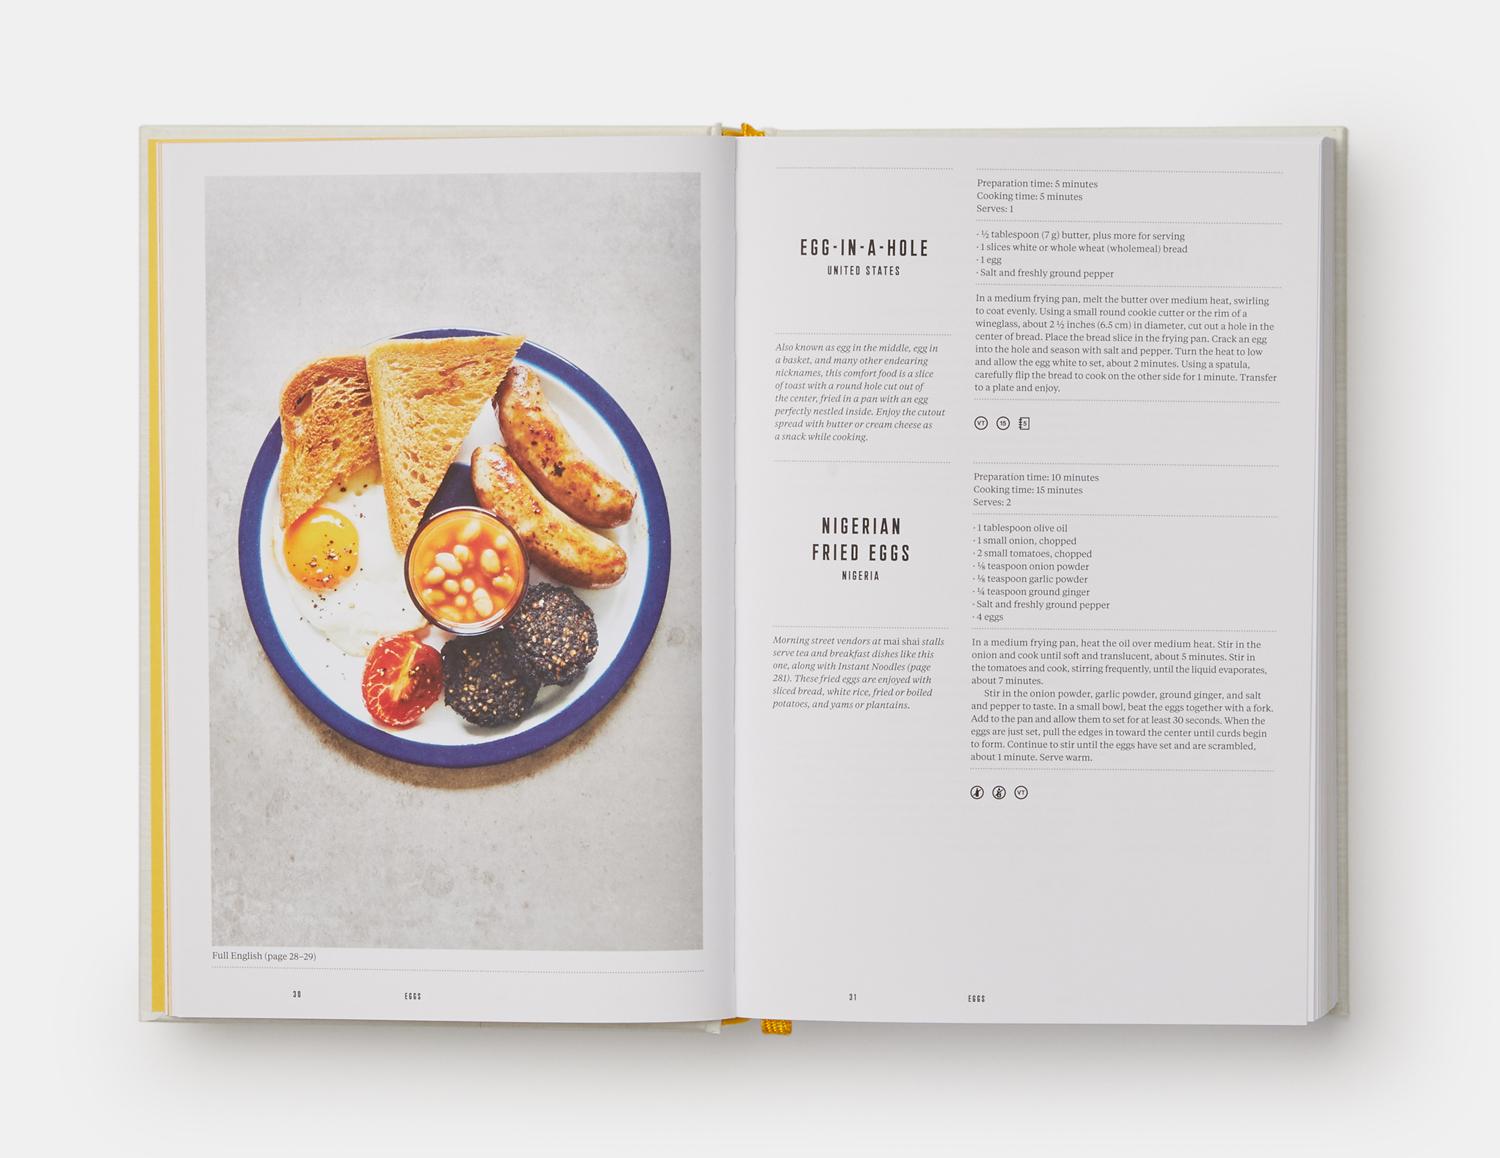 Commencez la journée avec le livre de cuisine qui fait autorité en matière de petits déjeuners authentiques du monde entier. 

Le petit-déjeuner est le moment le plus important et le plus réconfortant de la journée pour des milliards de personnes